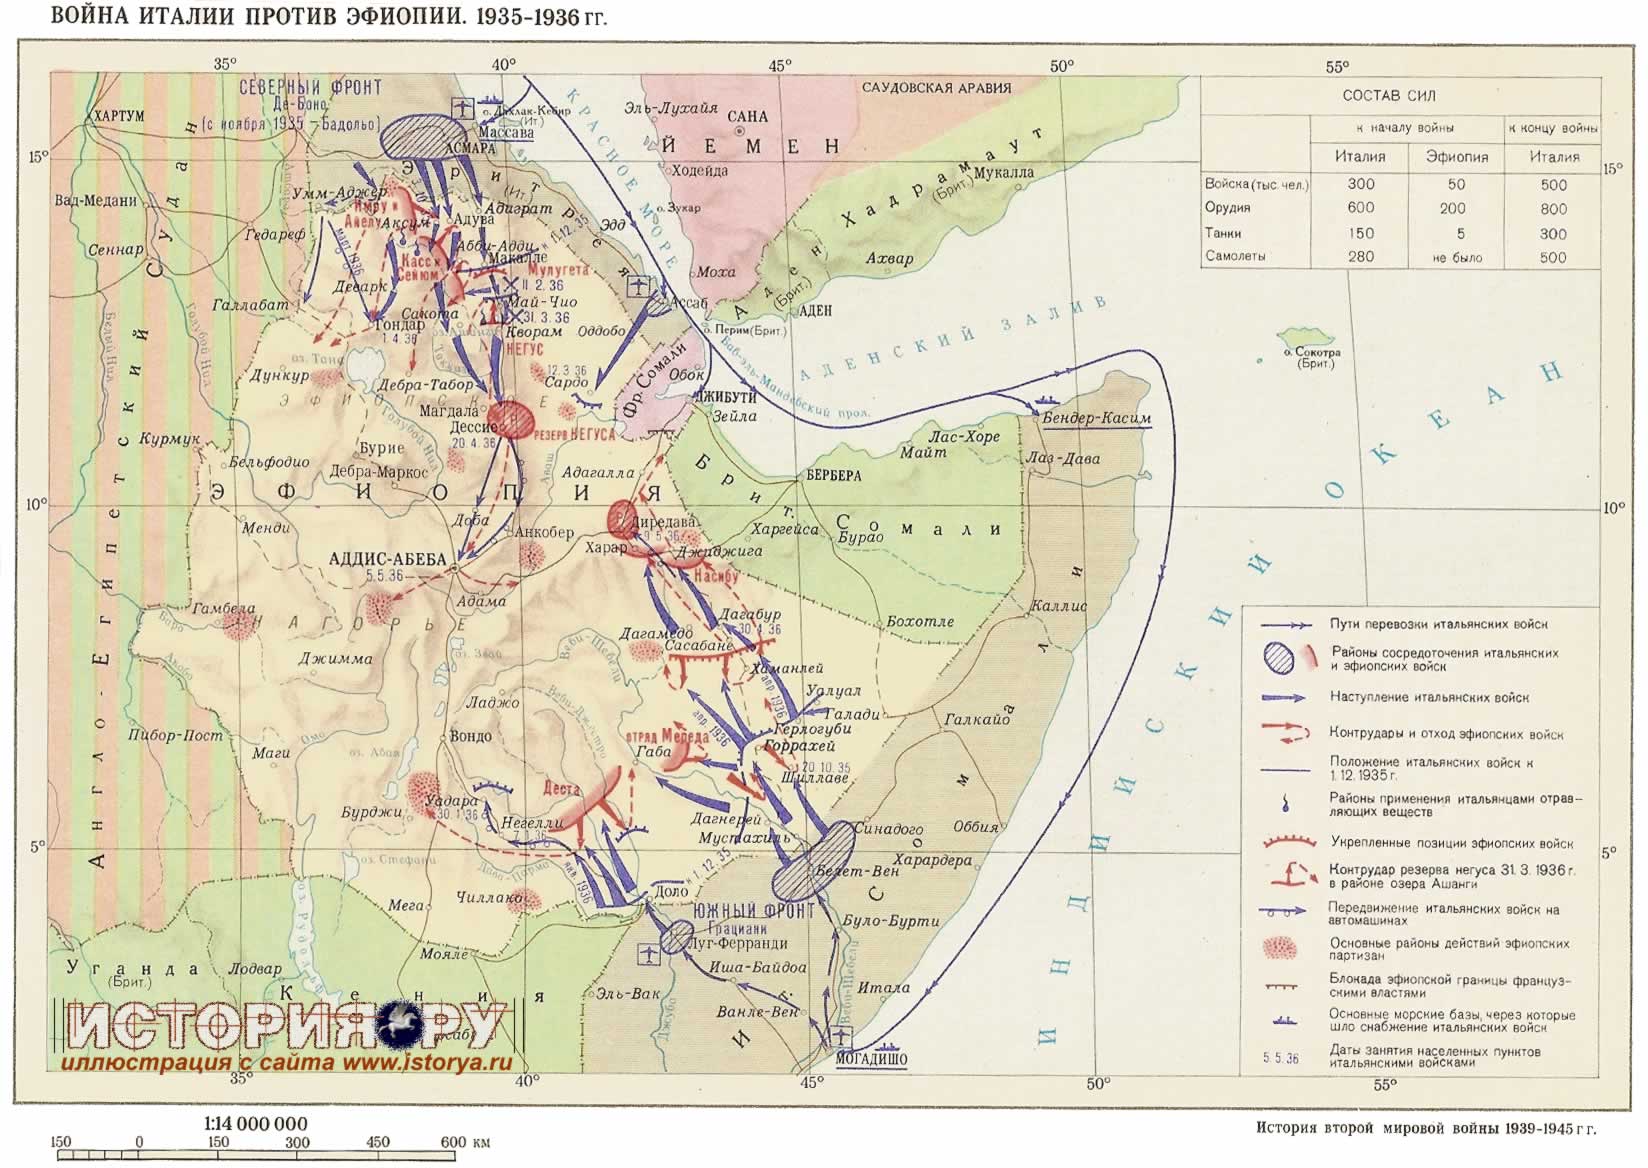 Война Италии и Эфиопии 1935-36 гг